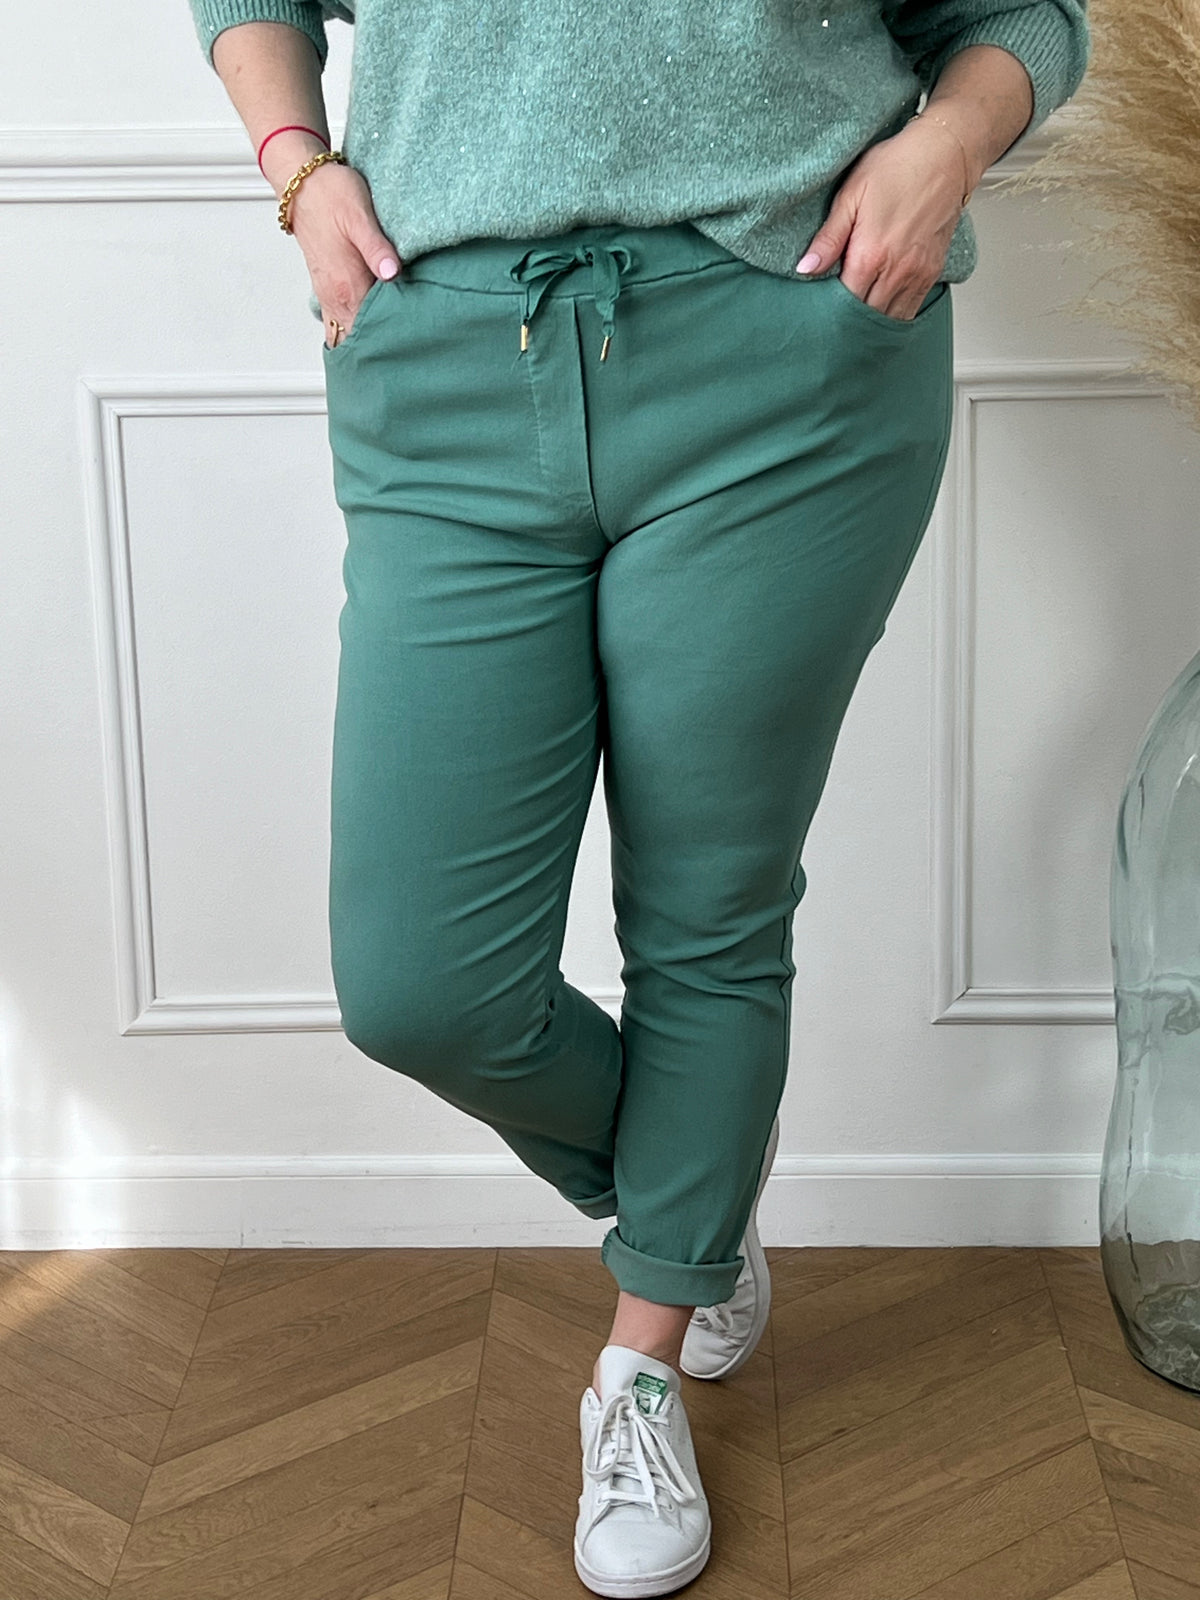 Optez pour l'élégance décontractée avec notre pantalon vert élastique à la taille. Confortable et chic, il s'adapte à toutes les occasions, alliant style moderne et bien-être absolu. Redéfinissez votre look avec notre pantalon Jack incontournable.